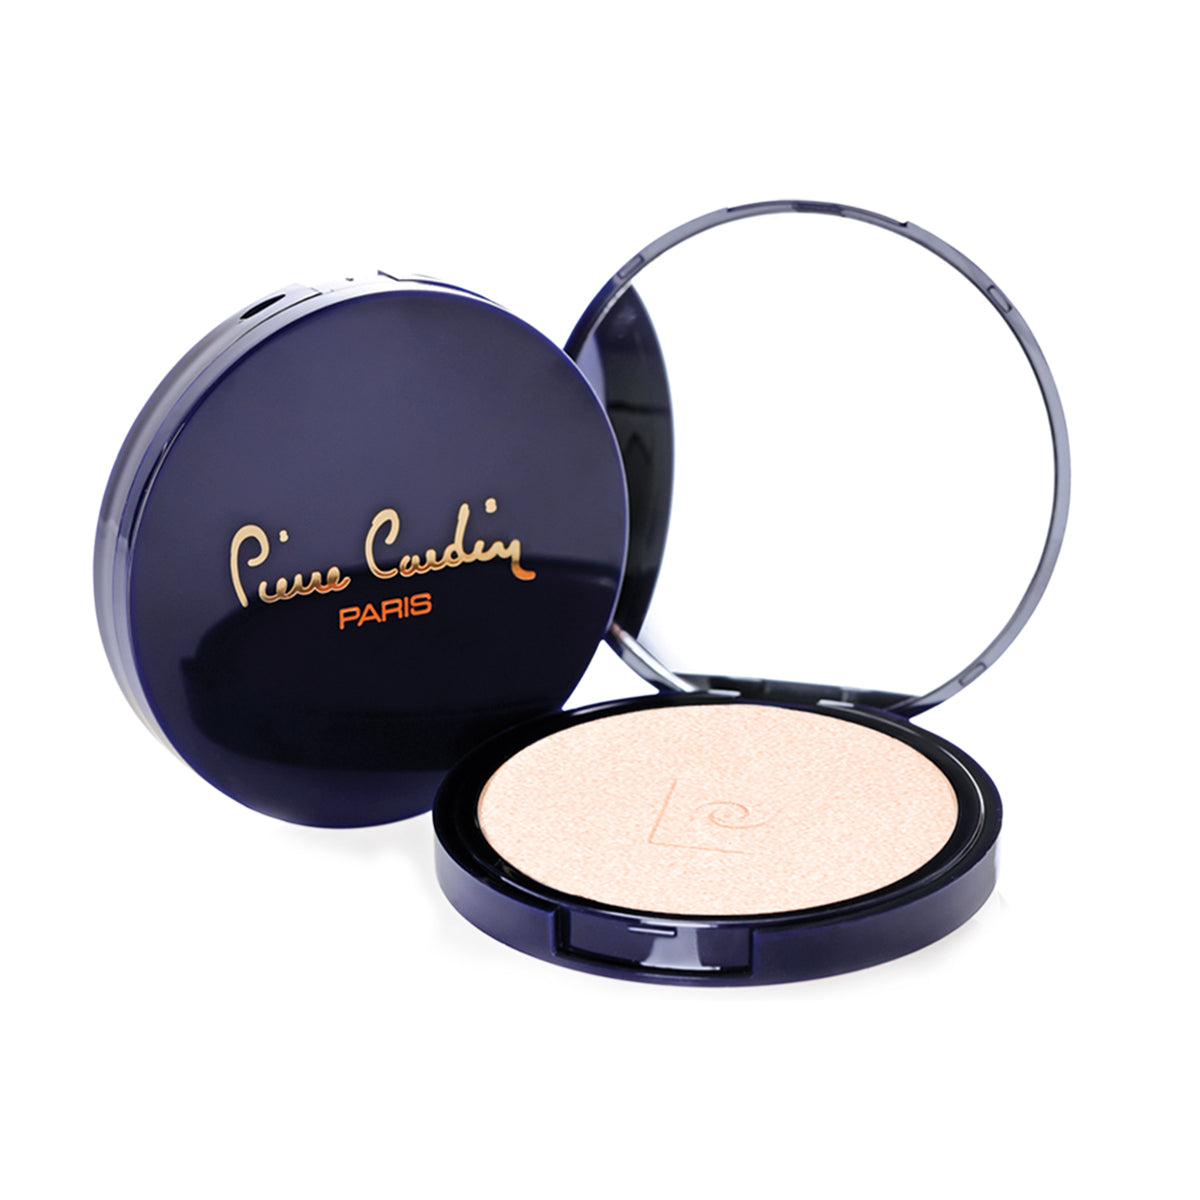 Pierre Cardin Illuminating Skin Perfector Vanilla Quartz 465 - 13,5 g